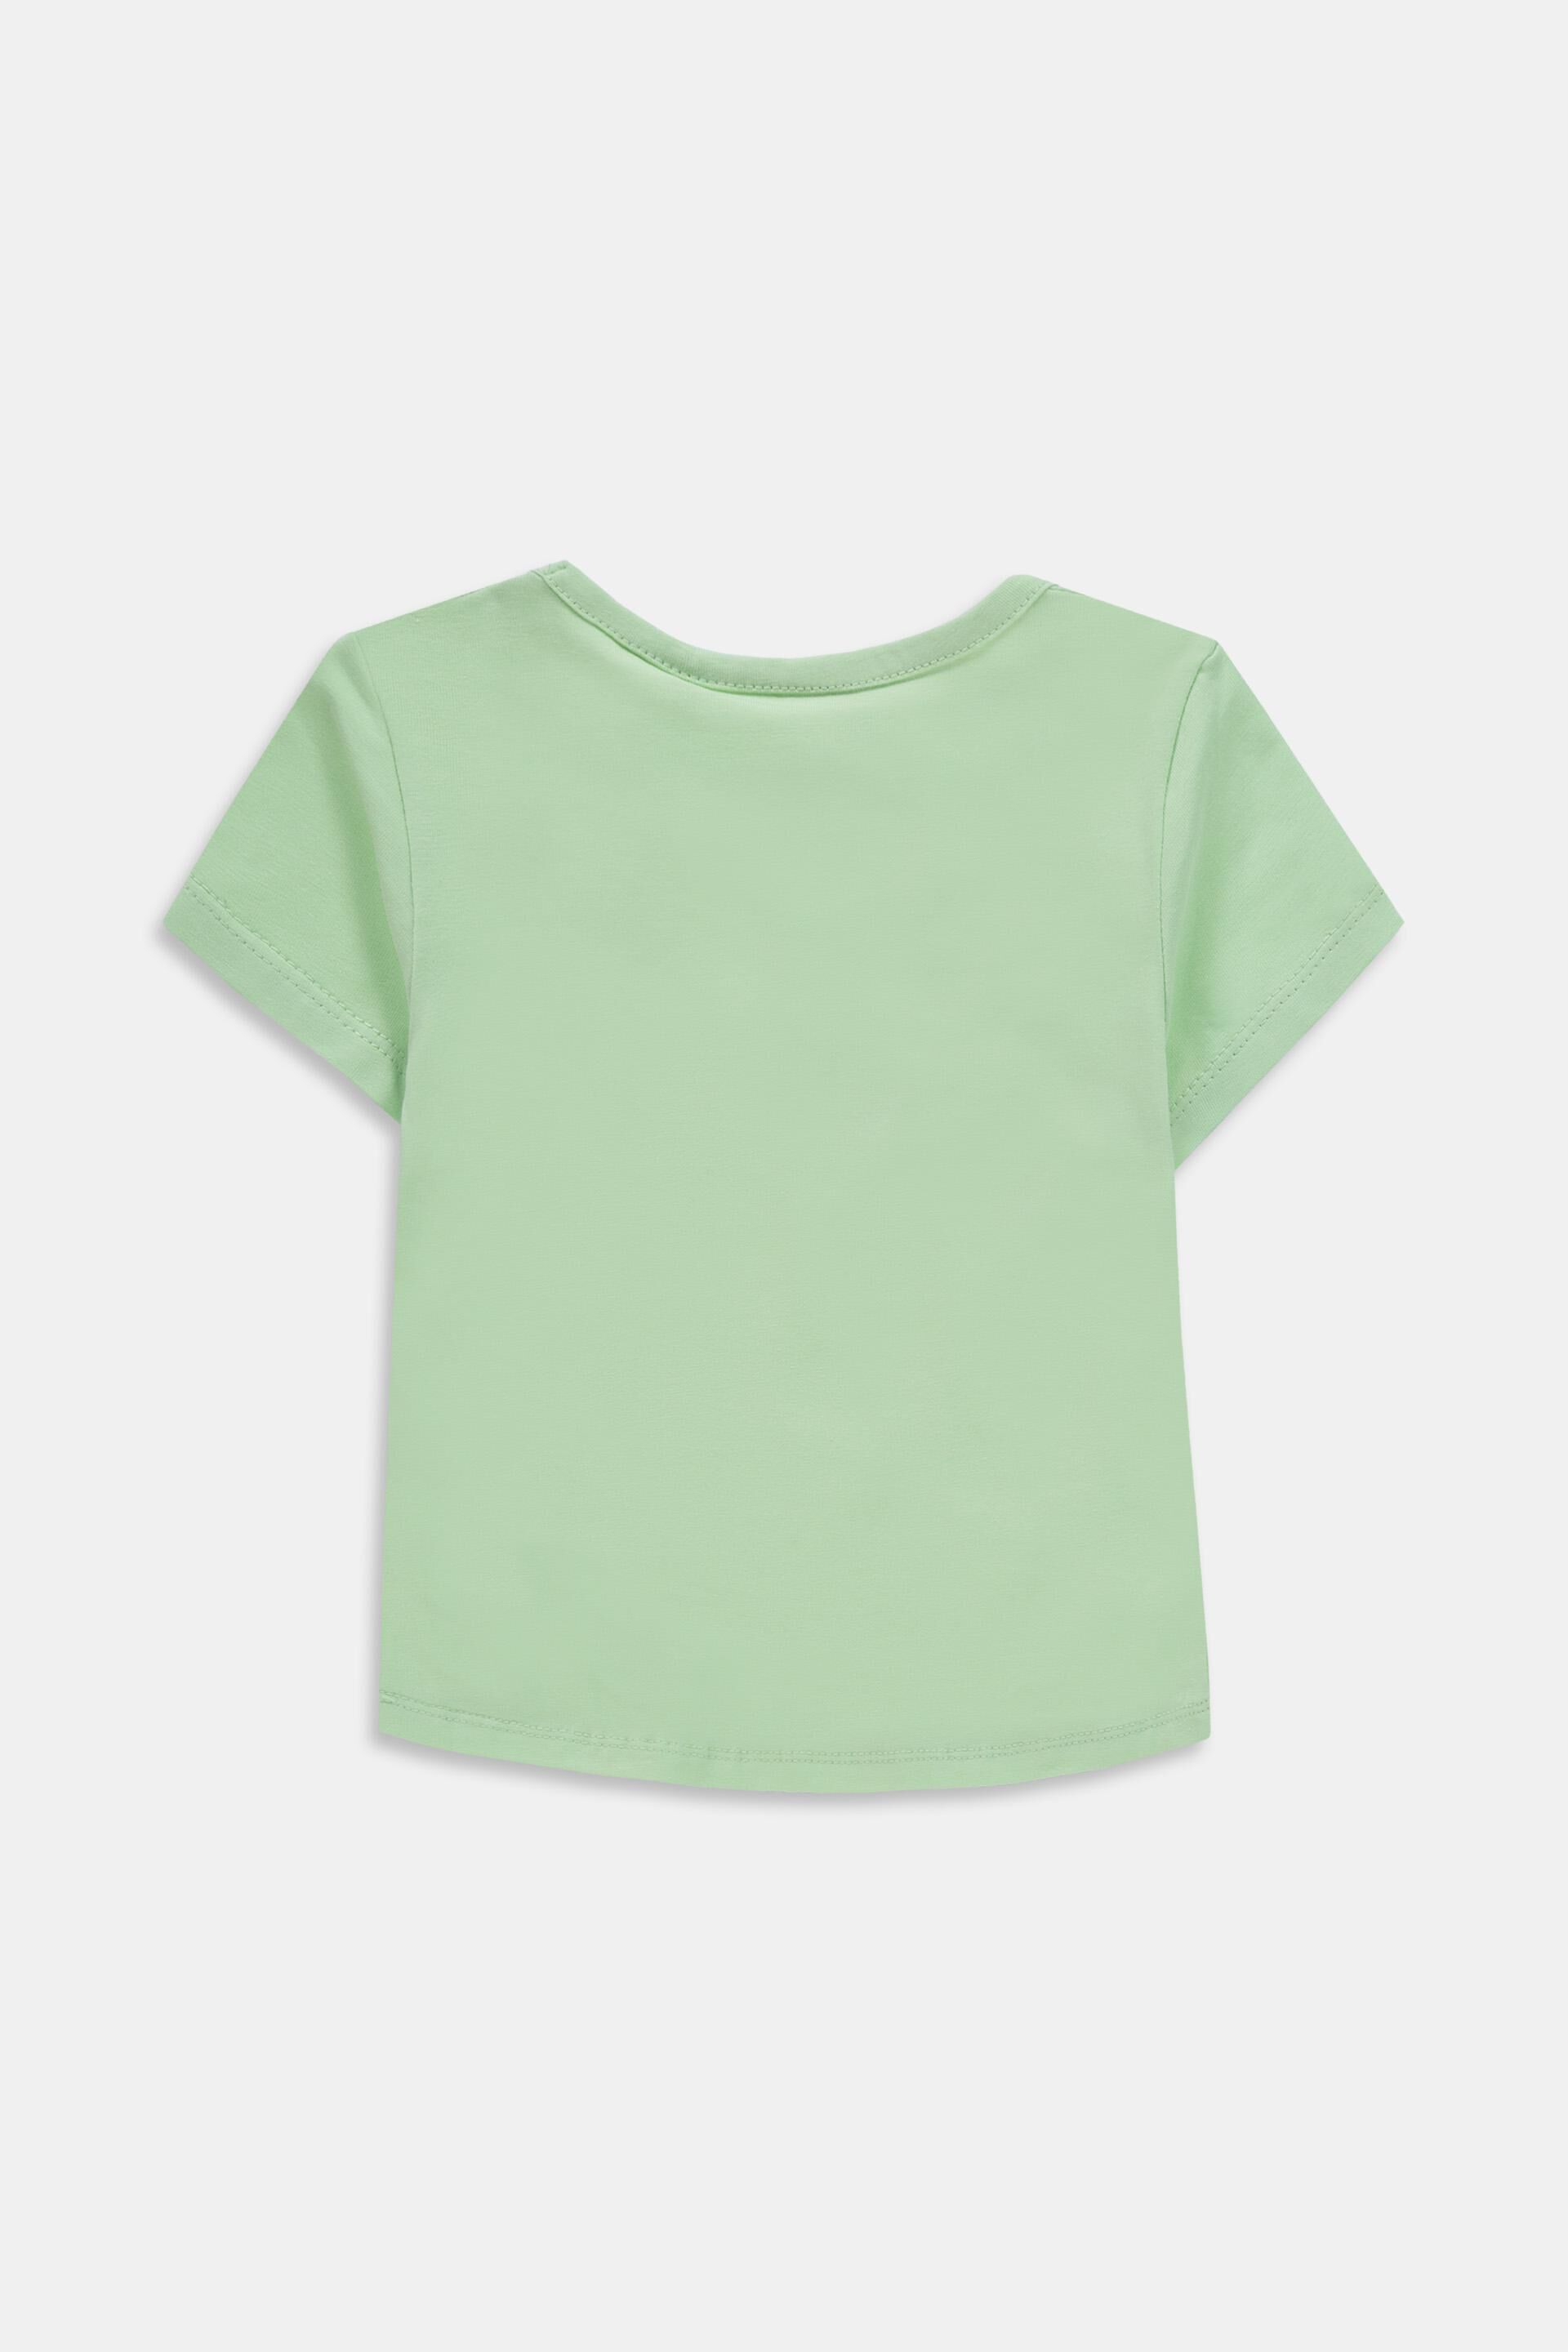 Esprit Mädchen T-Shirt Gr Mädchen Bekleidung Shirts & Tops T-Shirts DE 92 